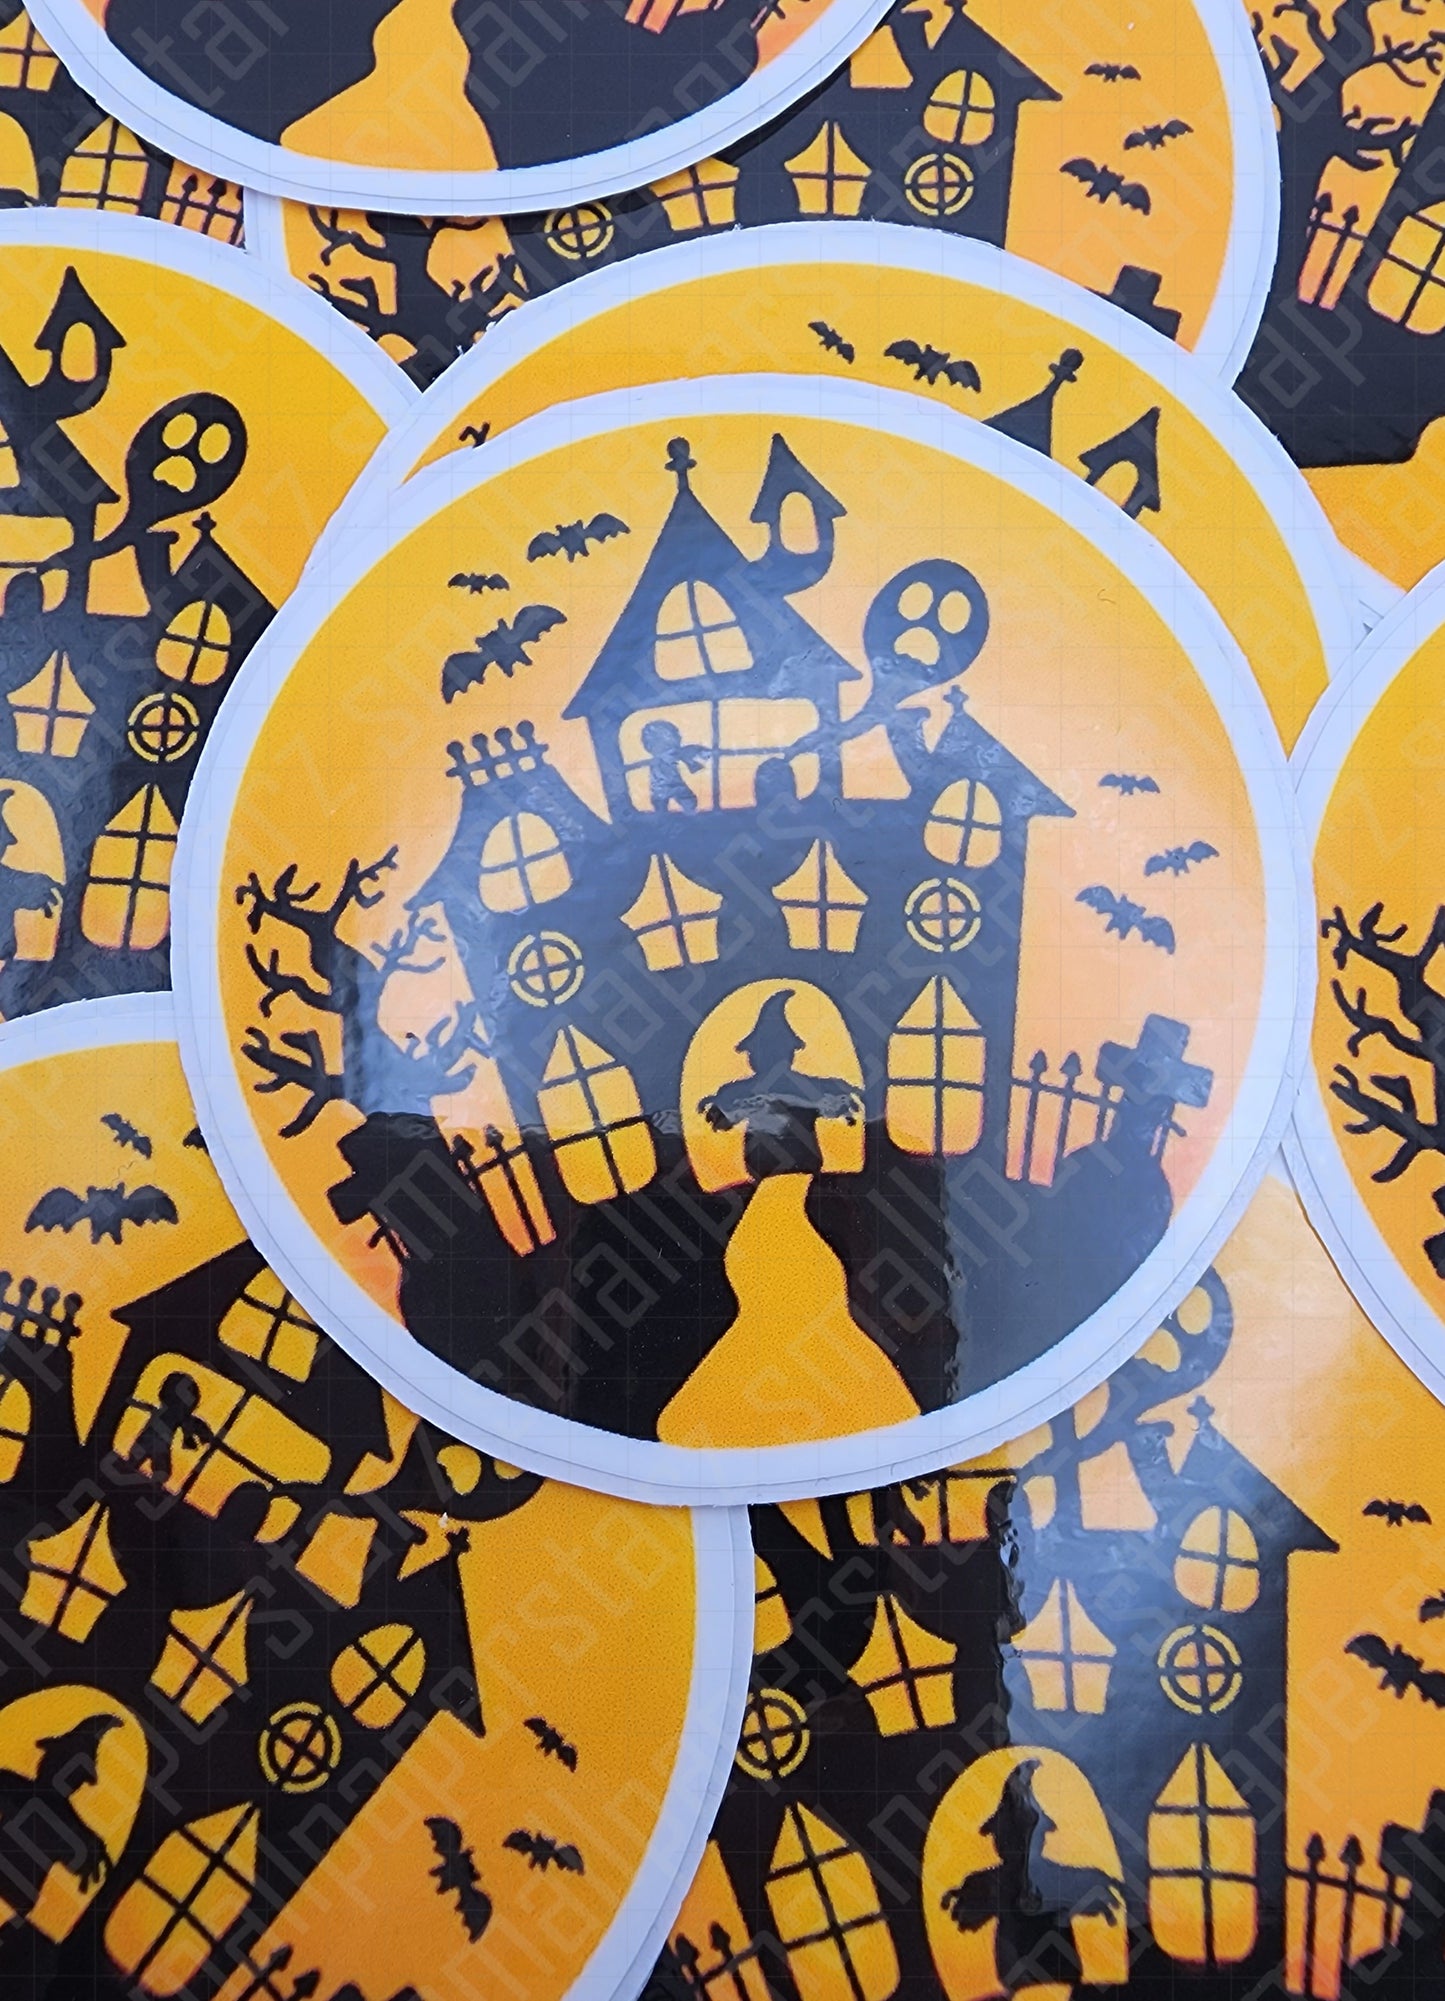 F017 - Haunted Halloween House Water Resistant Vinyl Die Cuts Sticker Flakes